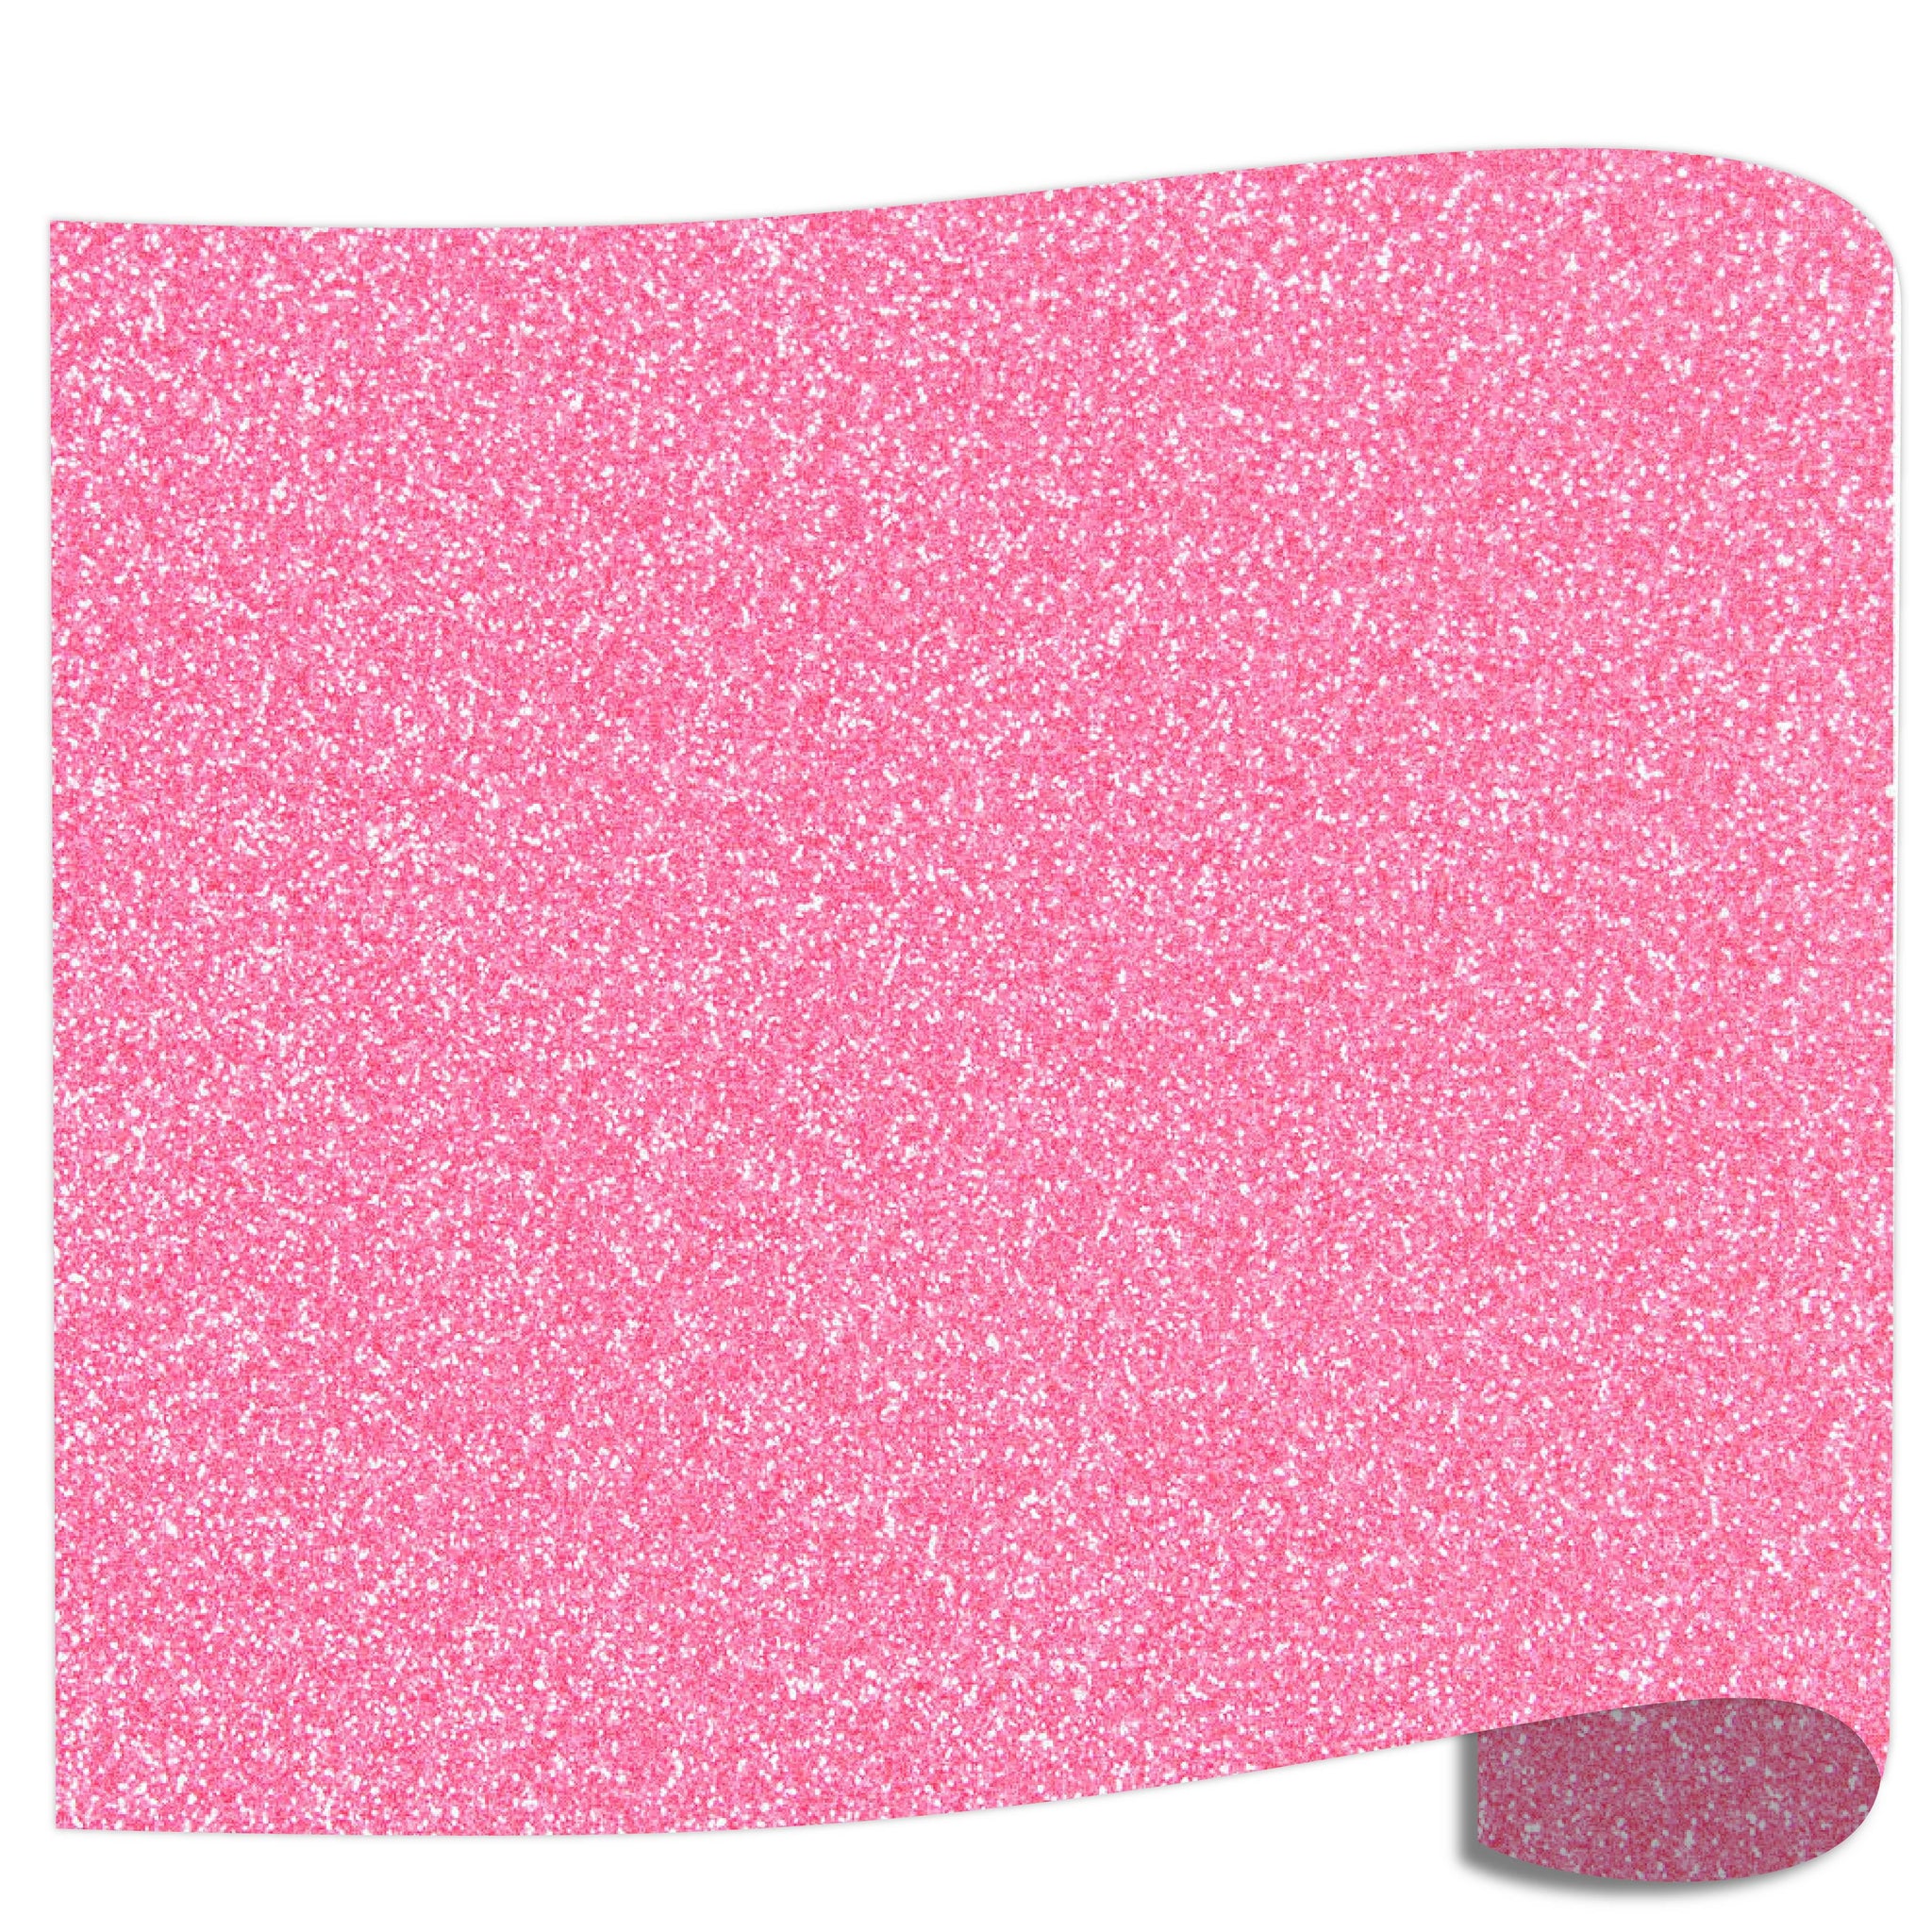 Siser Glitter Heat Transfer Vinyl - Translucent Pink